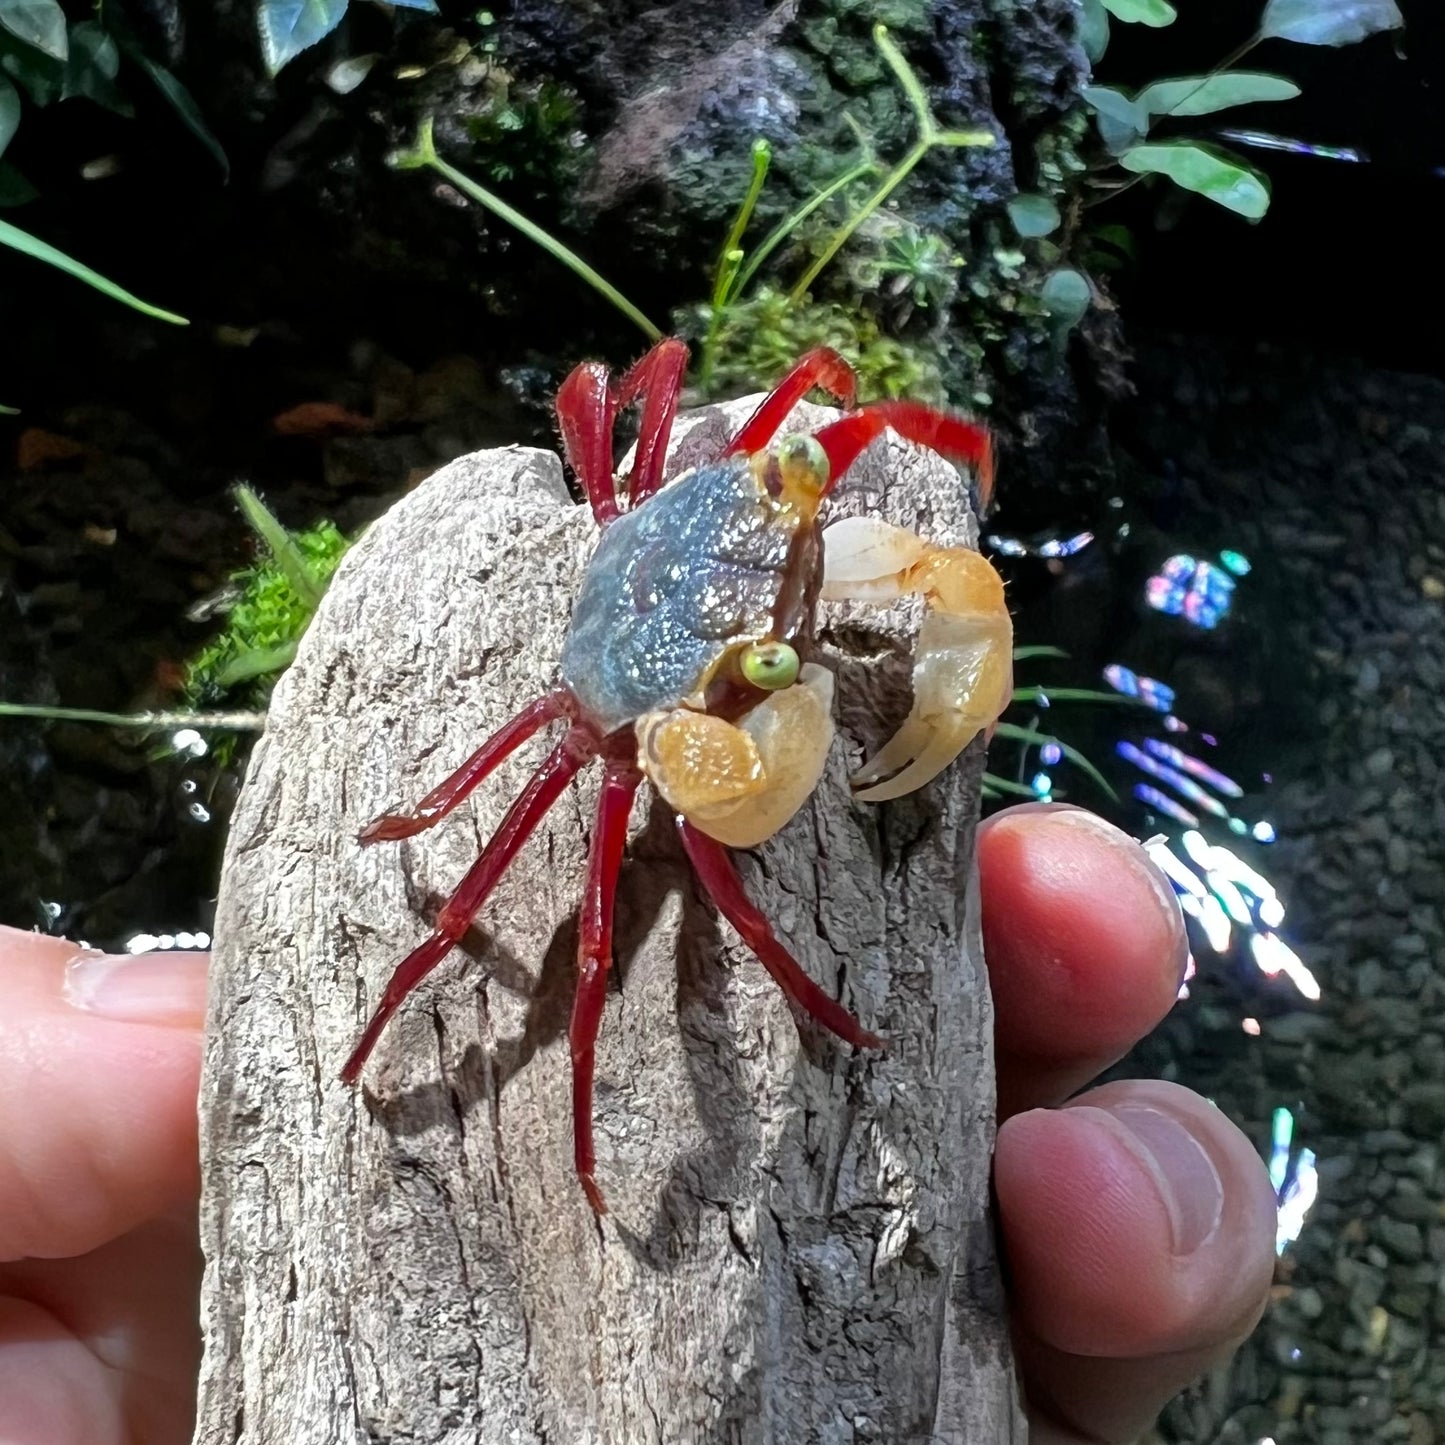 Mandarin Vampire Crab White Arm (Geossarma notoohorum)